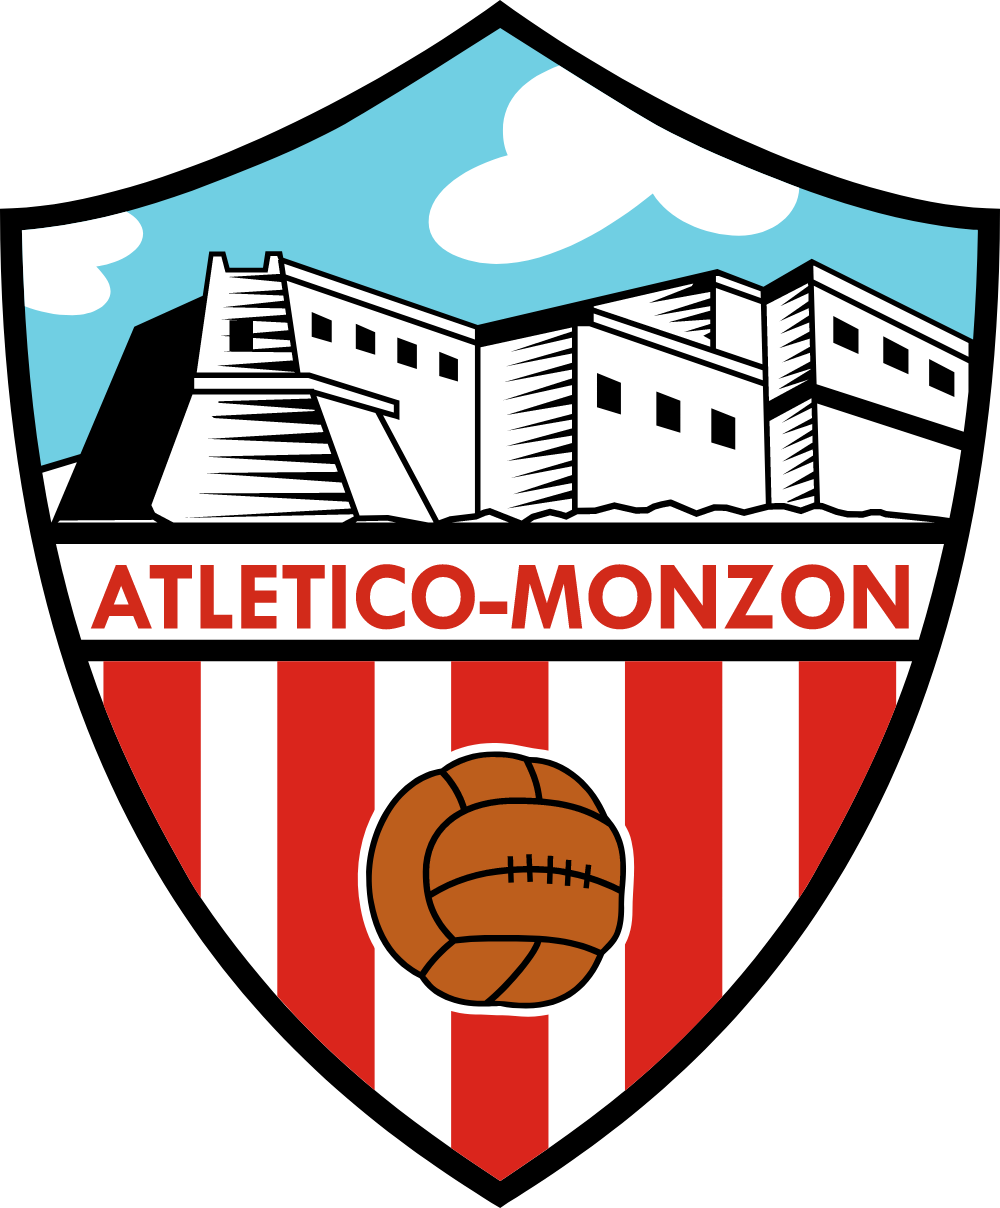 Club Atletico de Monzon Logo Logos